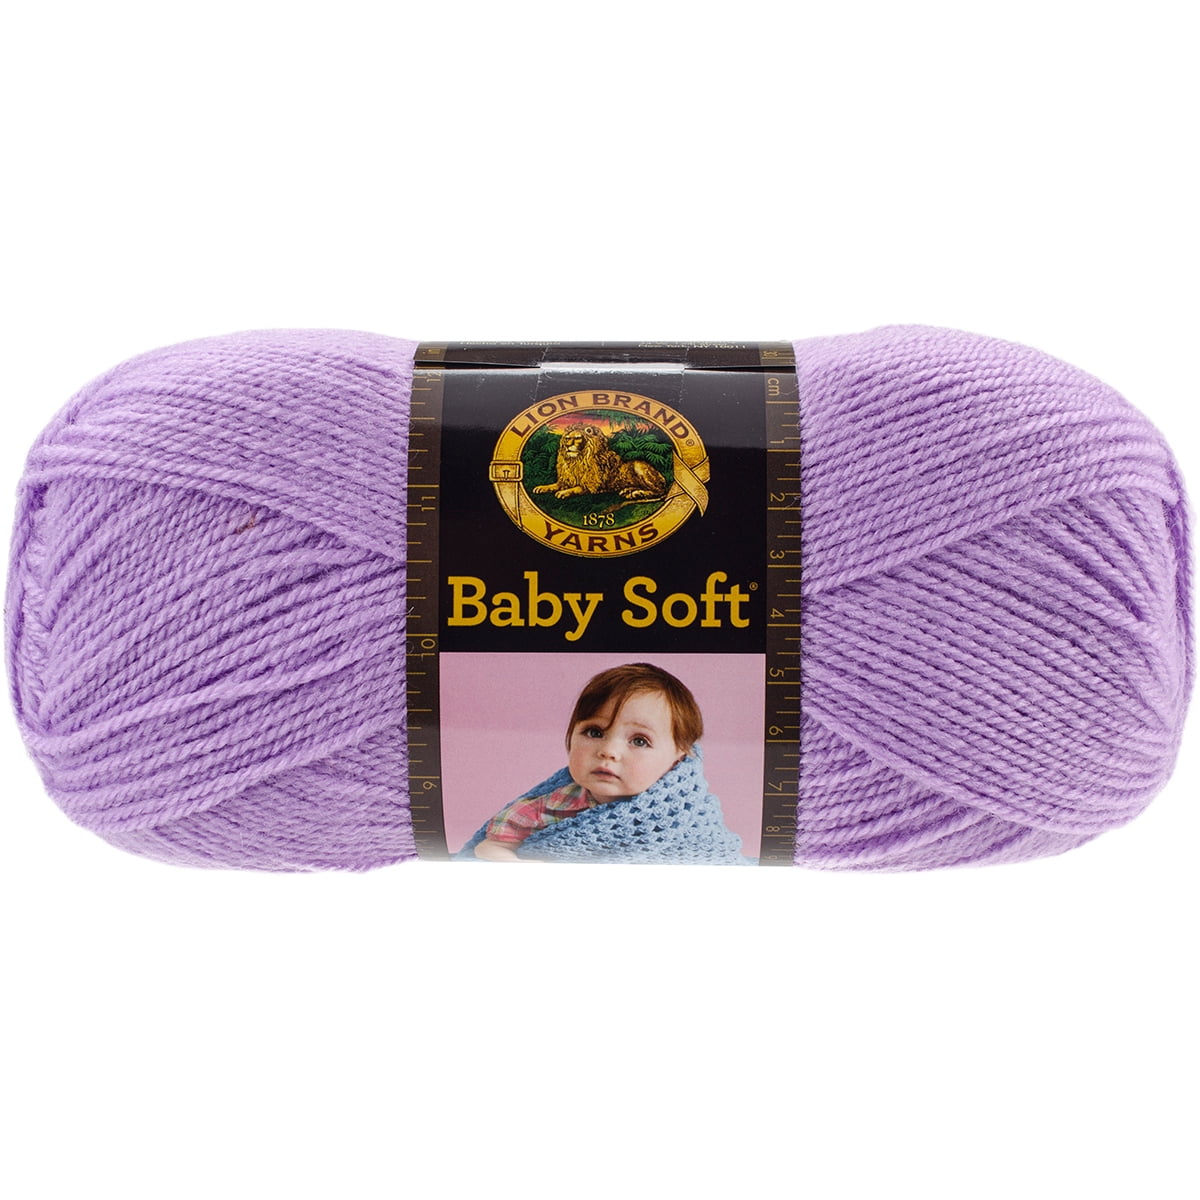 Baby Soft® Light Yarn